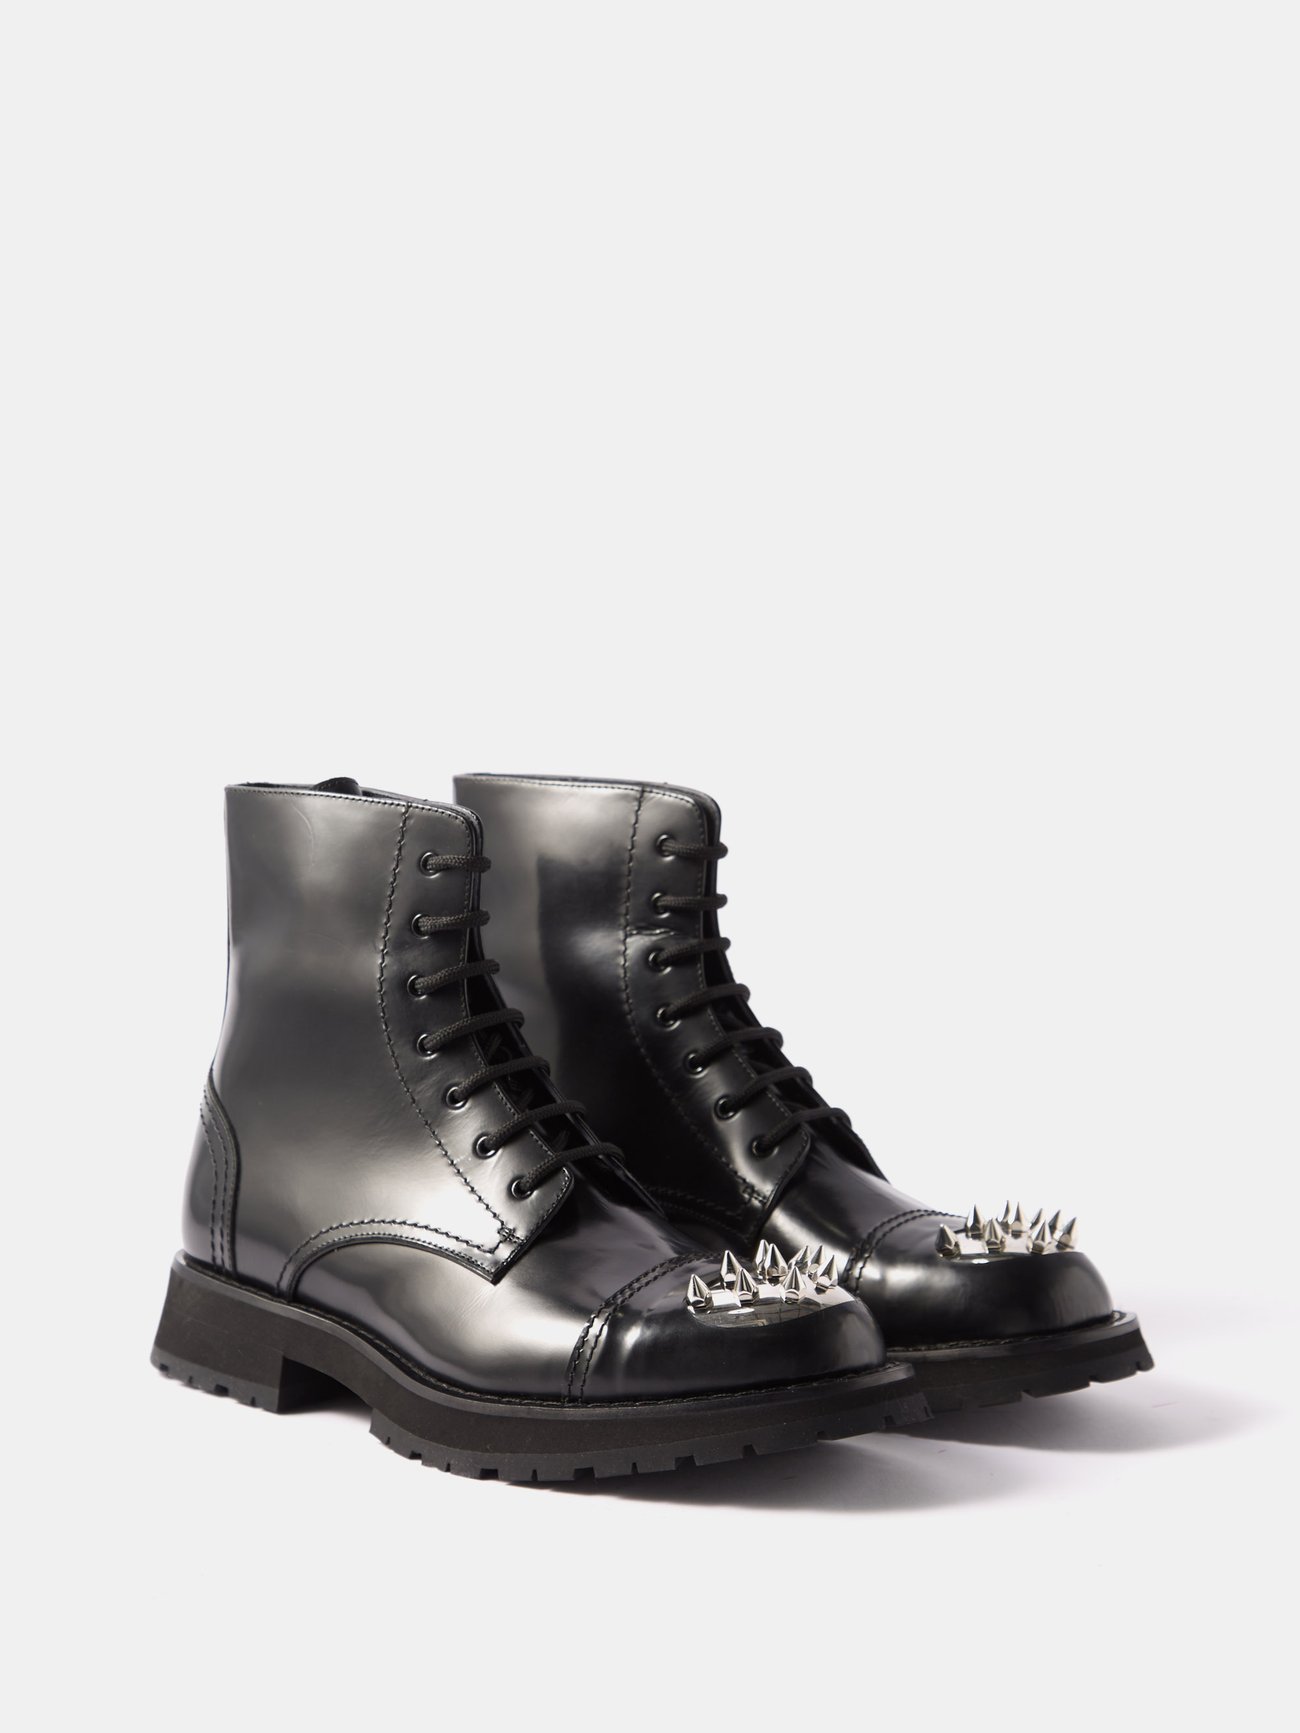 Alexander McQueen Spiked-Sole High-Heel Sandals